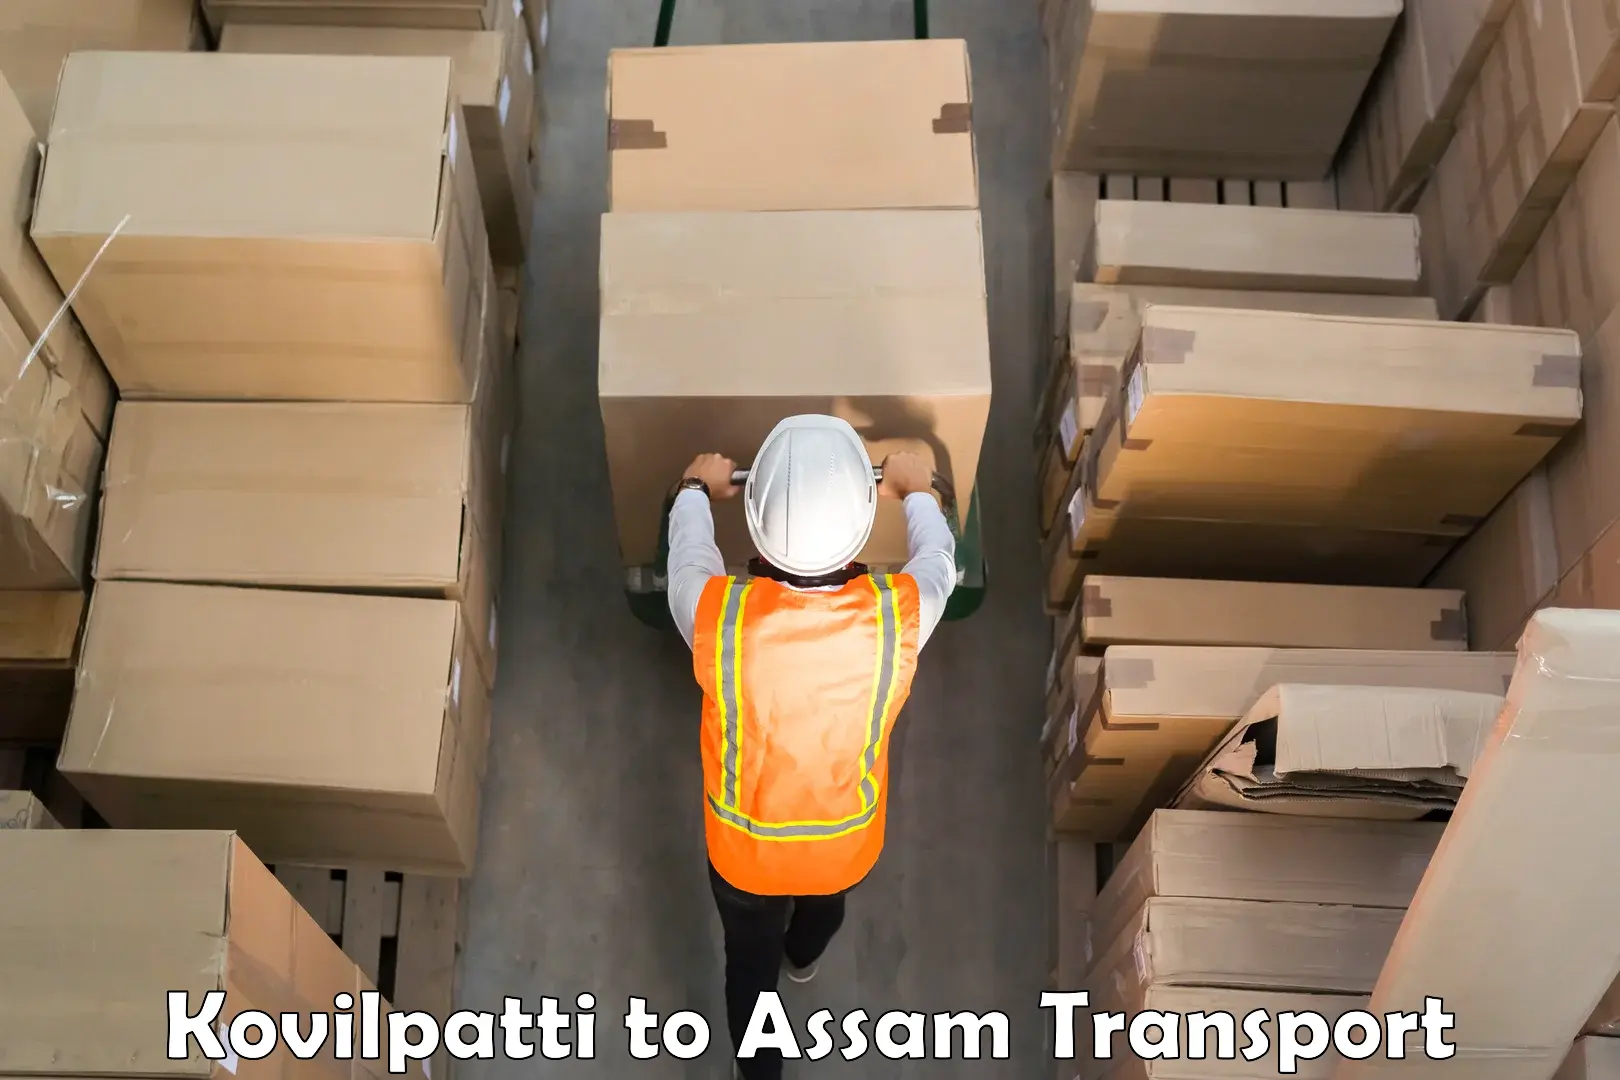 Nearby transport service Kovilpatti to Assam